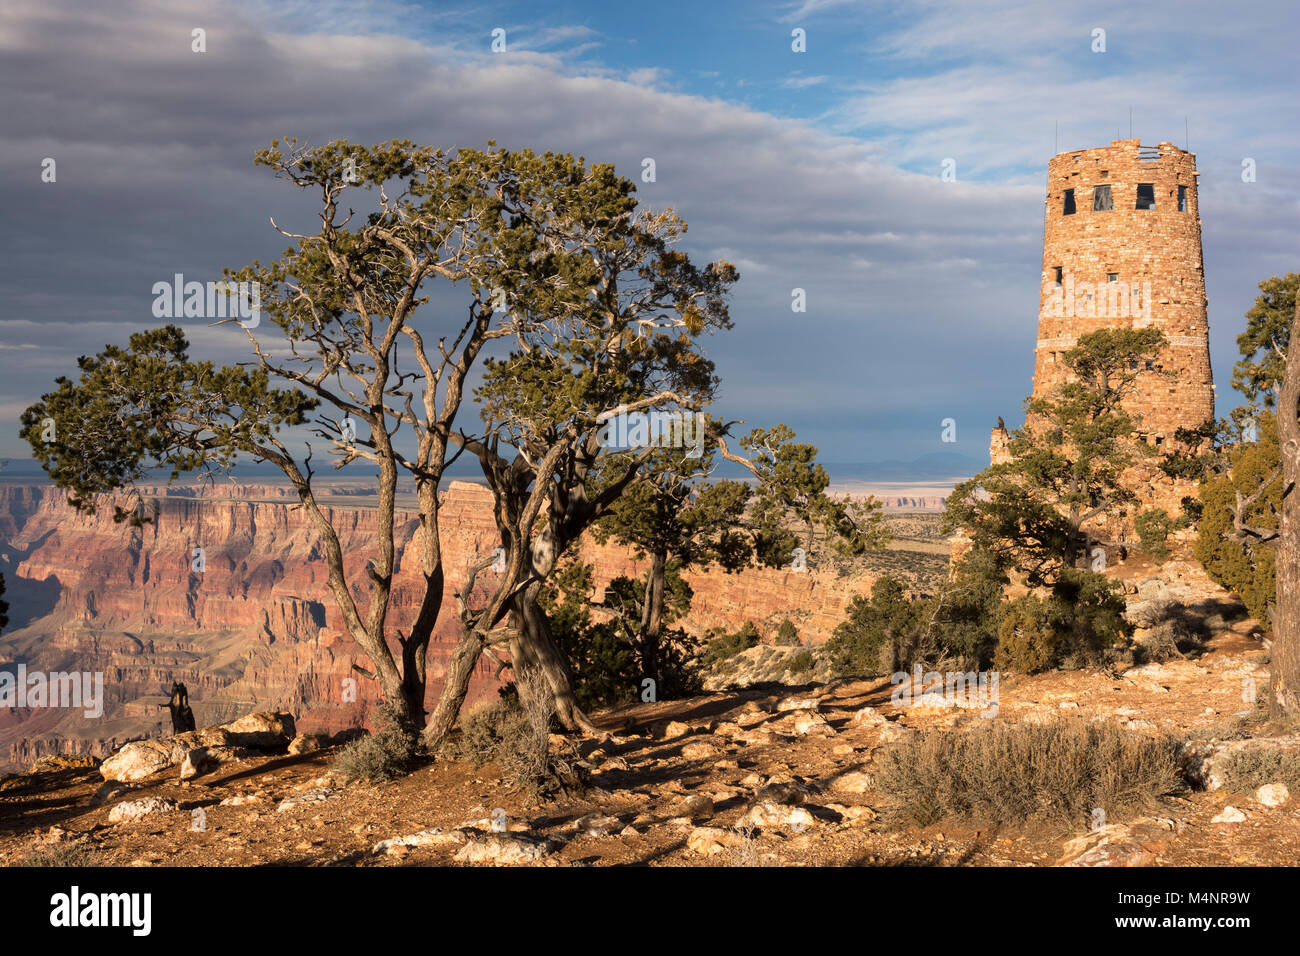 Vista del deserto torre di avvistamento nel tardo pomeriggio dal bordo sud del Parco Nazionale del Grand Canyon. Situato nel nord dell'Arizona. Foto Stock